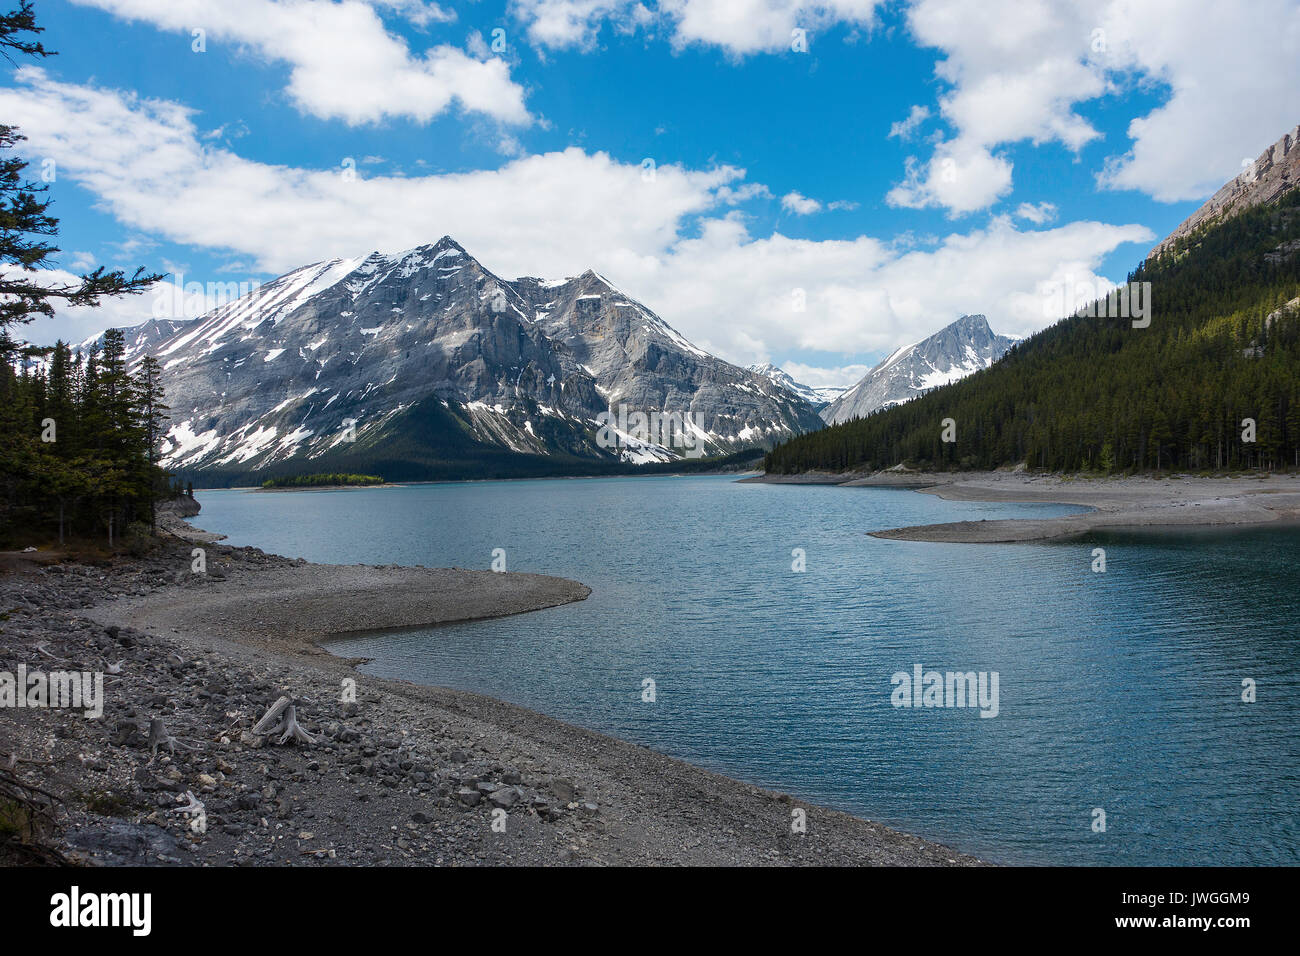 Mount Lyautey und Mount Putnik mit Upper Kananaskis Lake in den kanadischen Rockies Alberta Kanada Stockfoto